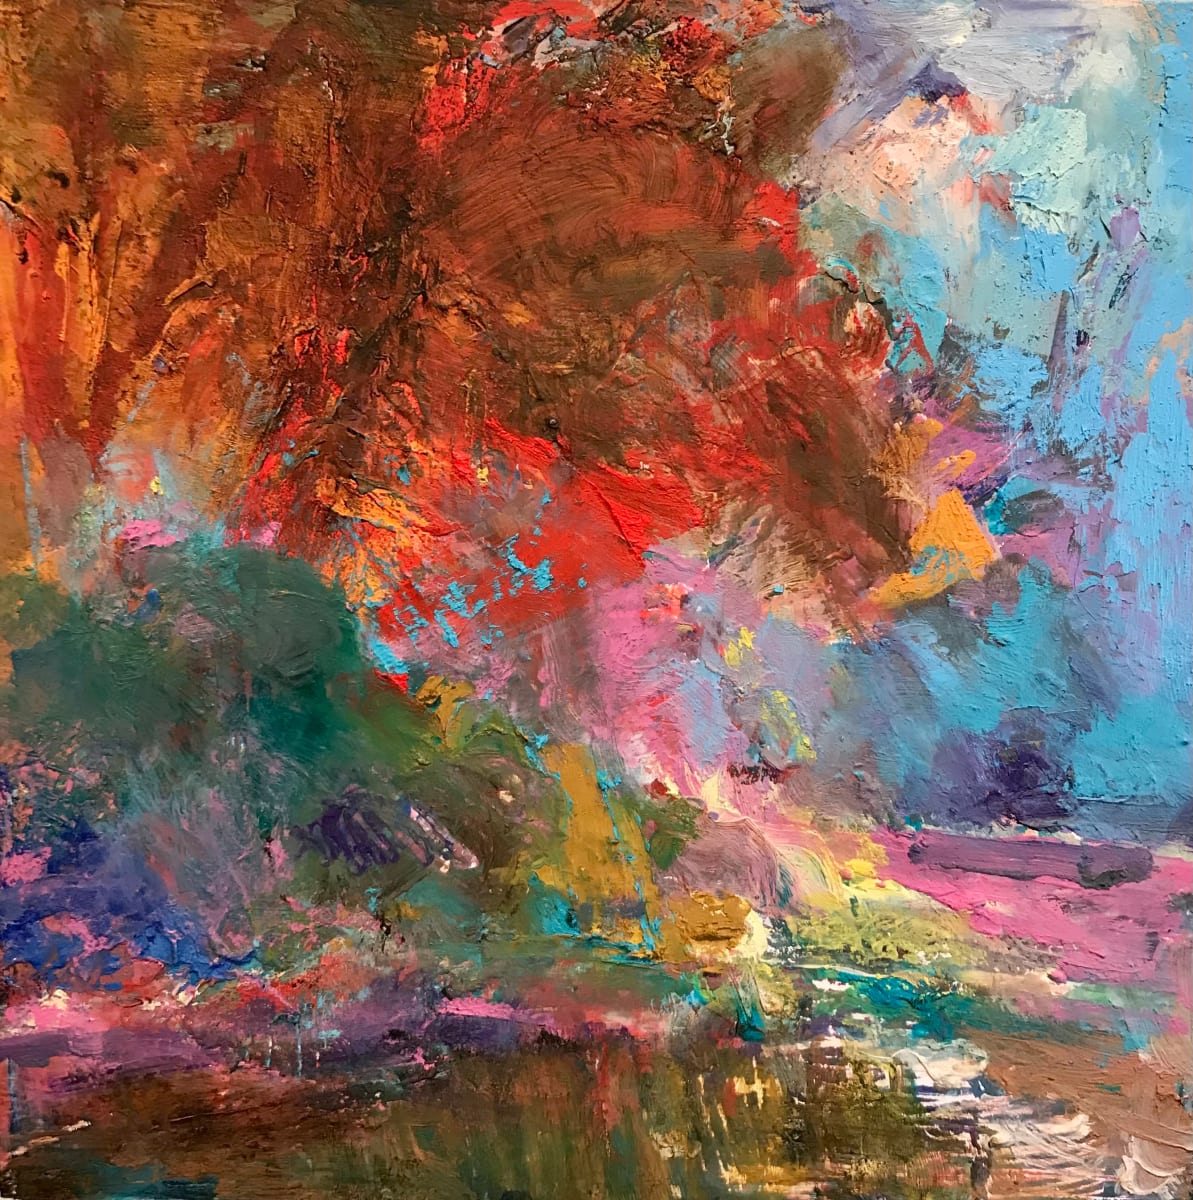 Autumn Trees by River / Arbres d’automne à la rivière by Lynda Bruce 